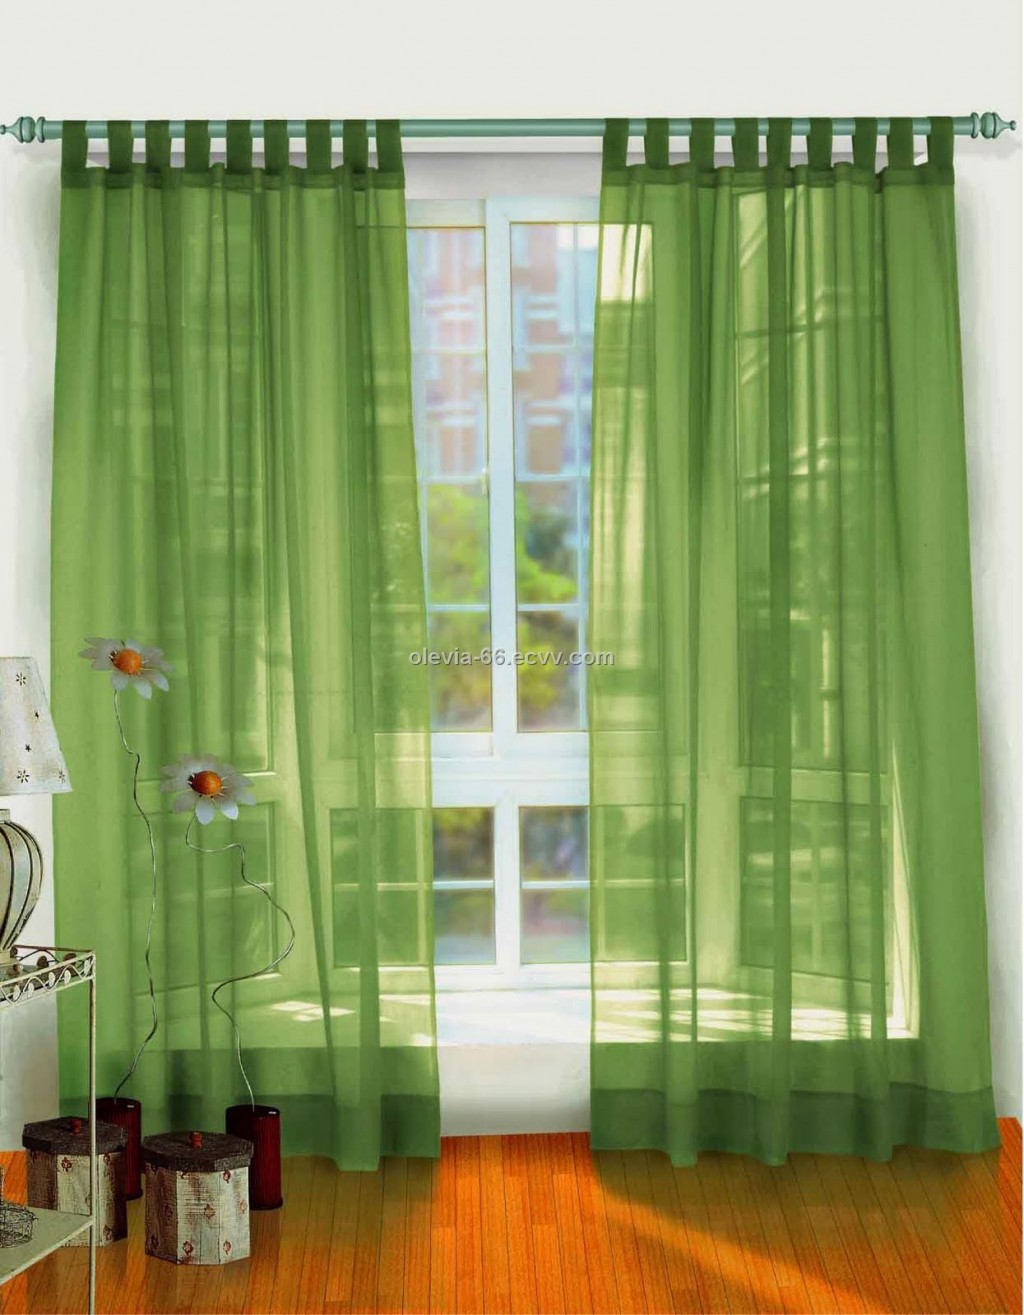 Curtain Shades in Curtain